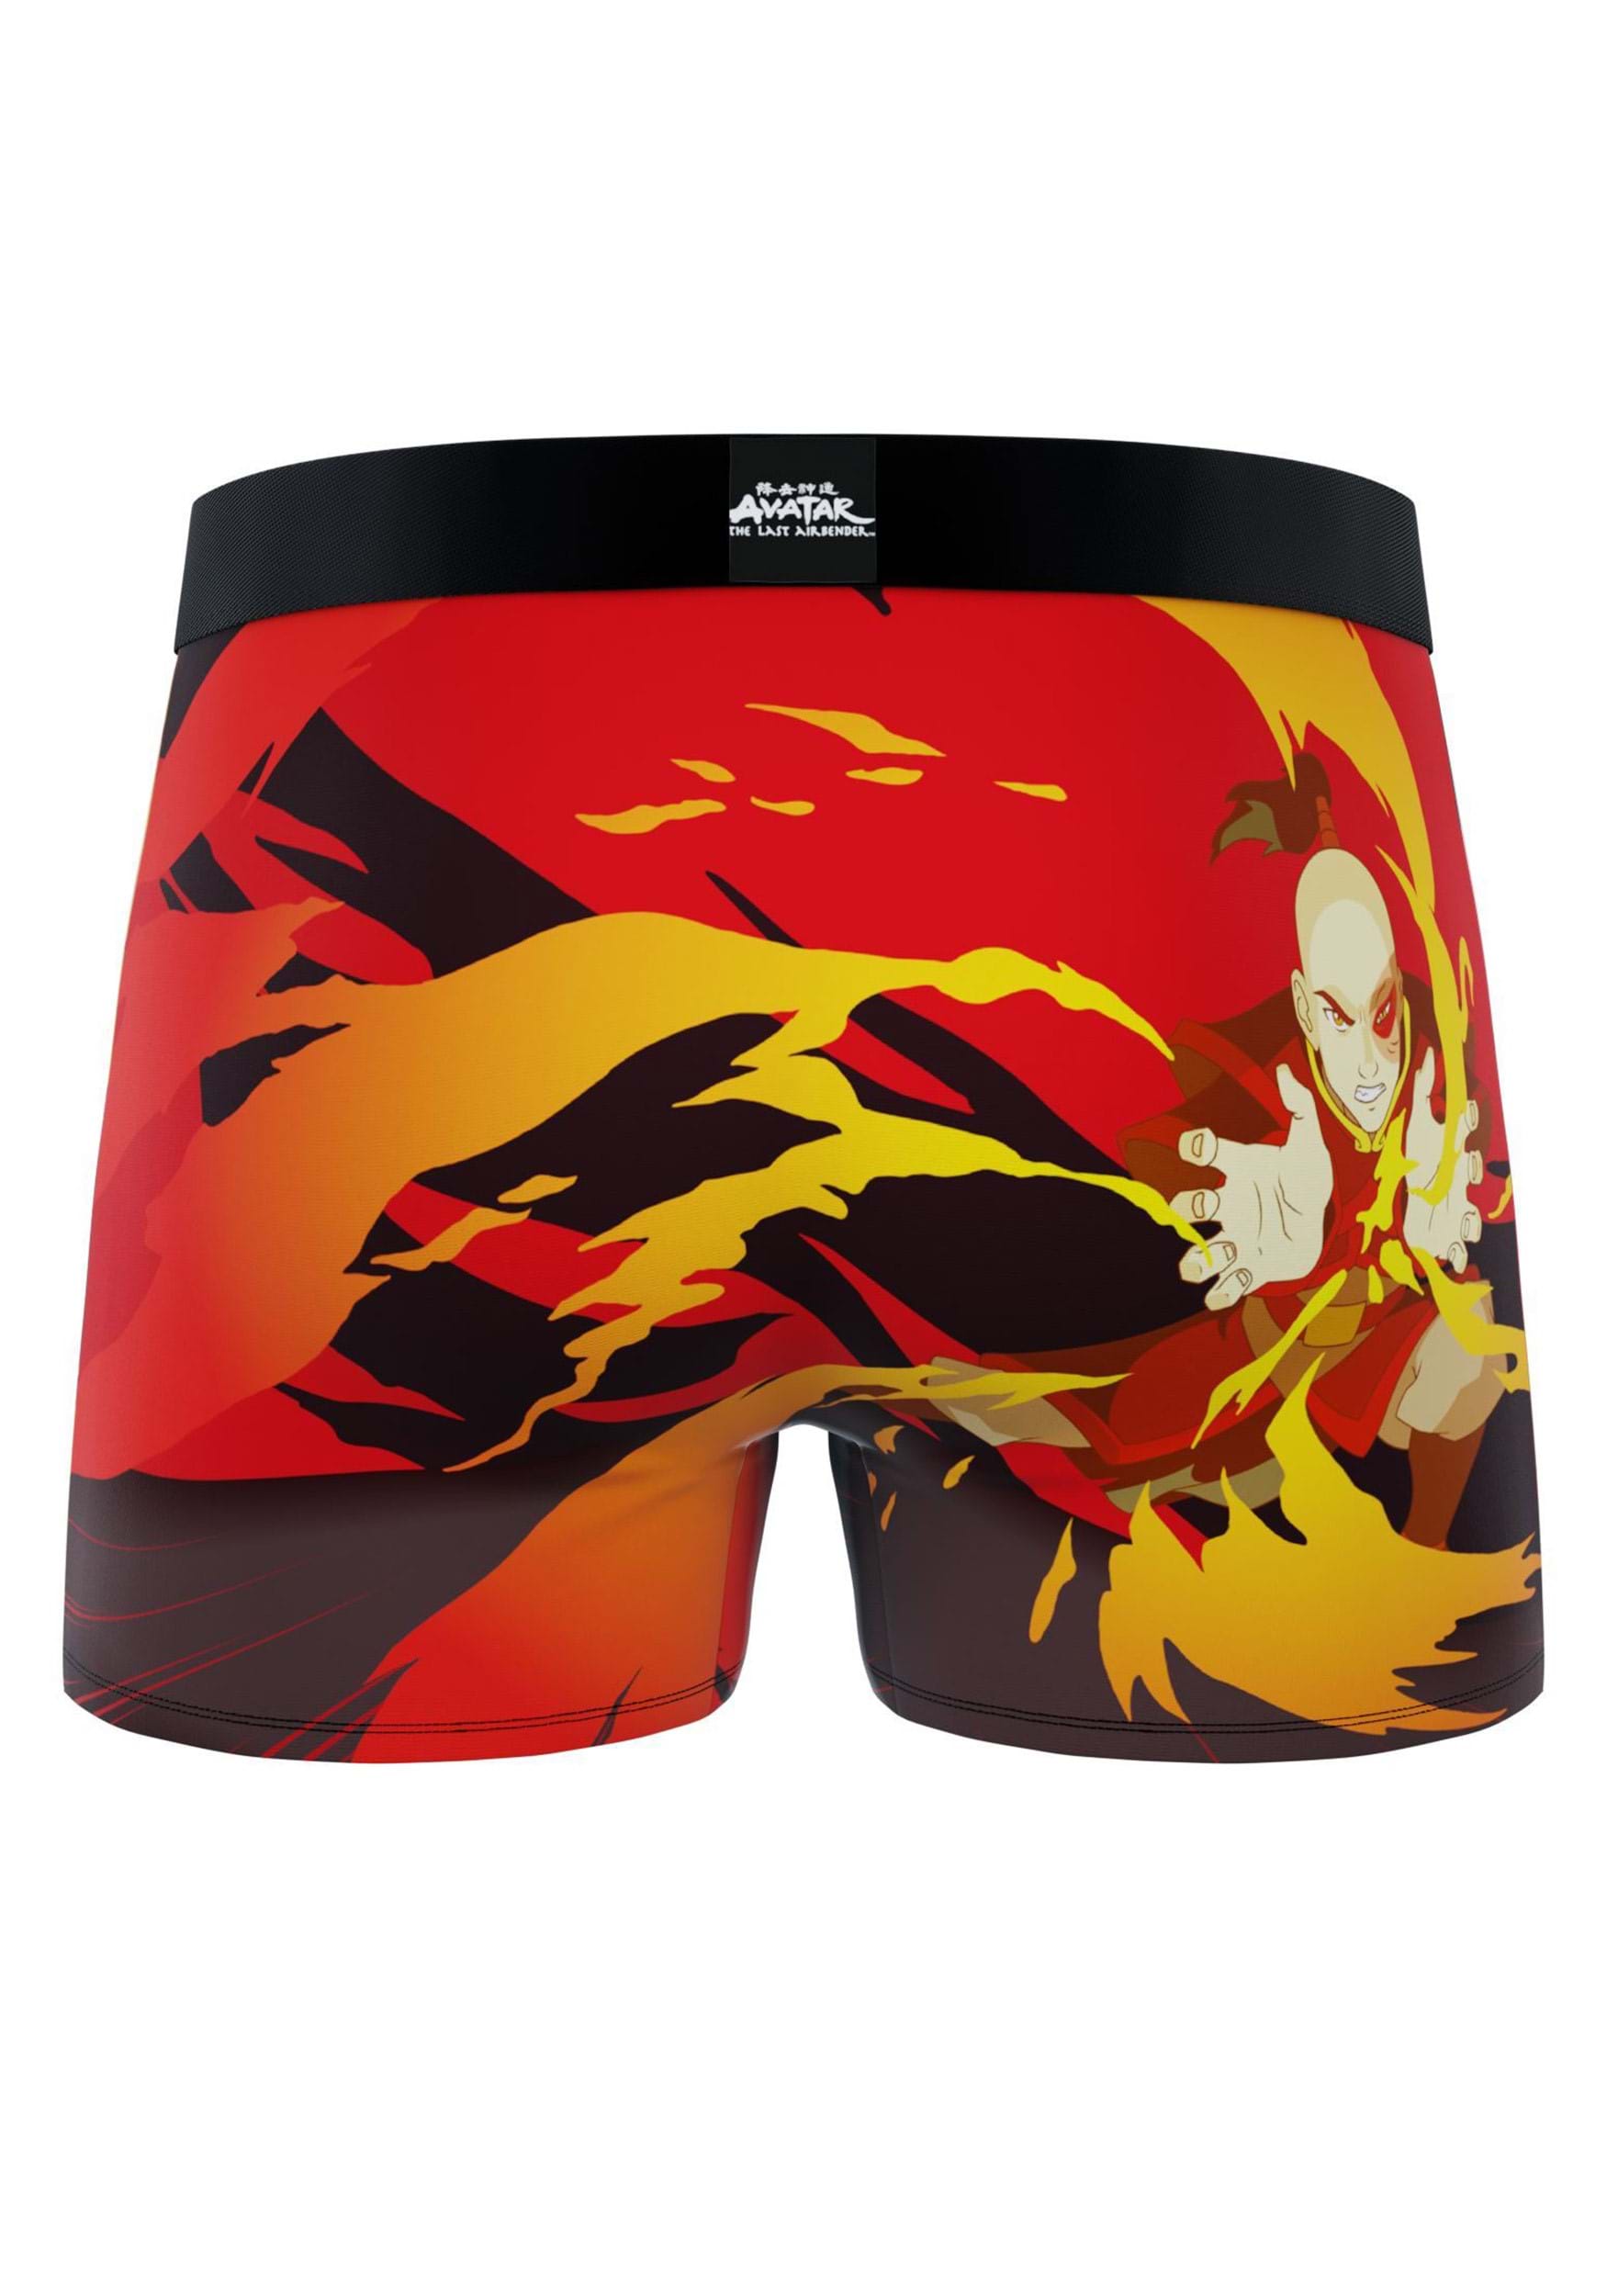 2 Pack Zuko And Avatar Men's Boxer Briefs , Men's Underwear